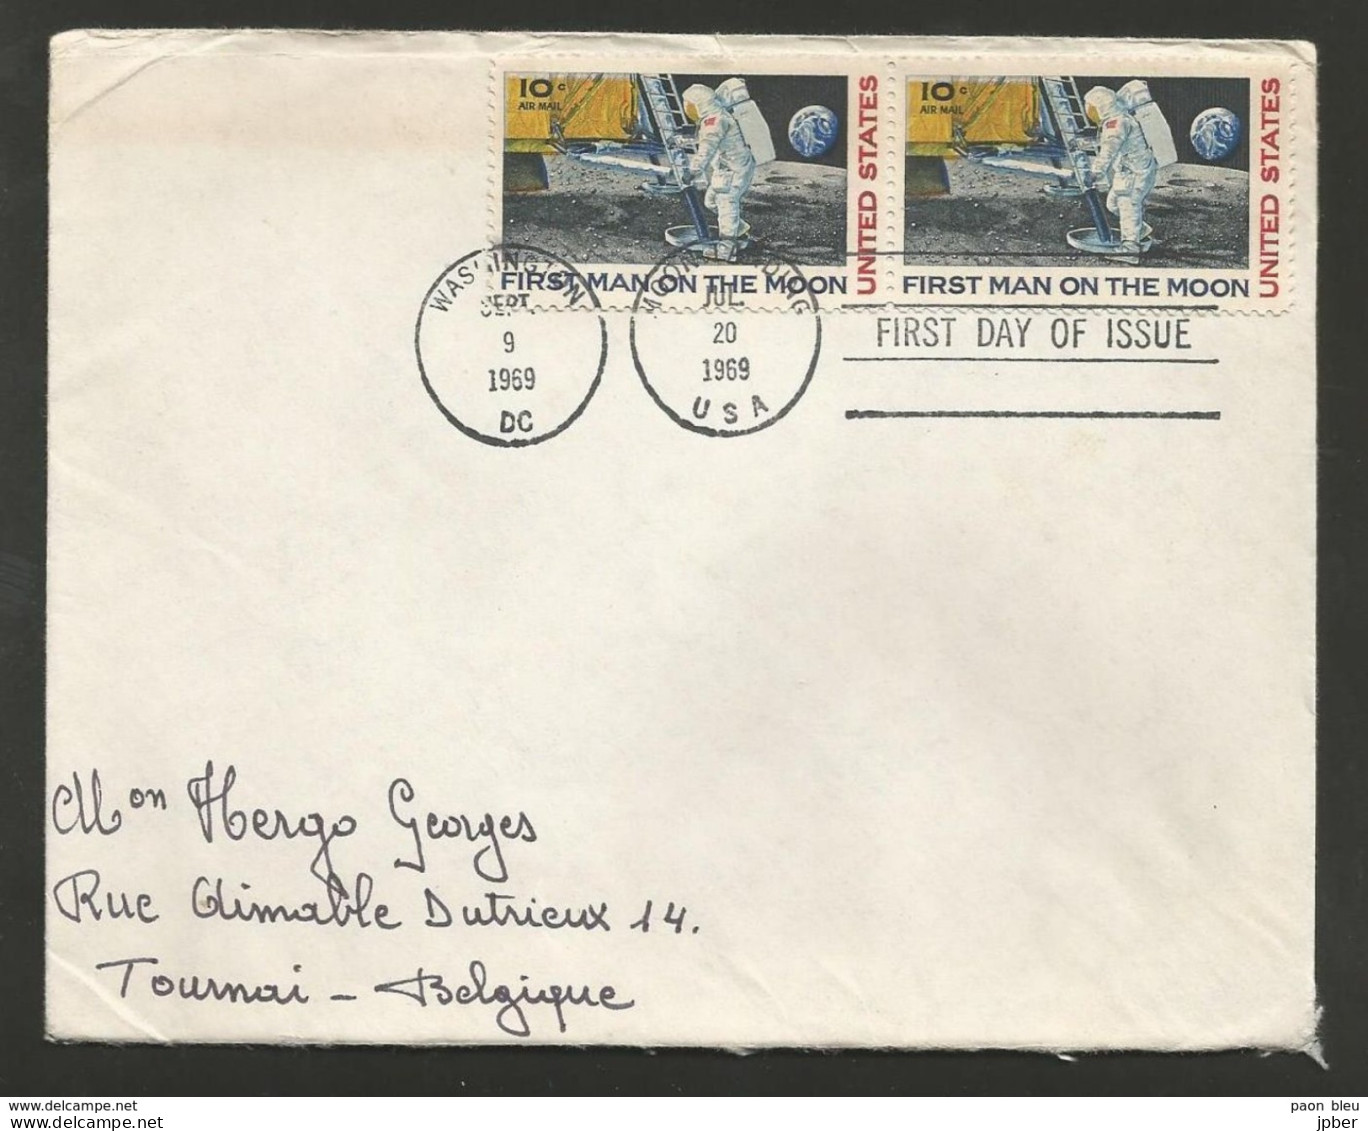 Etats-Unis - Lettre Du 20/7/69 - 1er Pas Sur La Lune - First Man On The Moon - Souvenirs & Special Cards